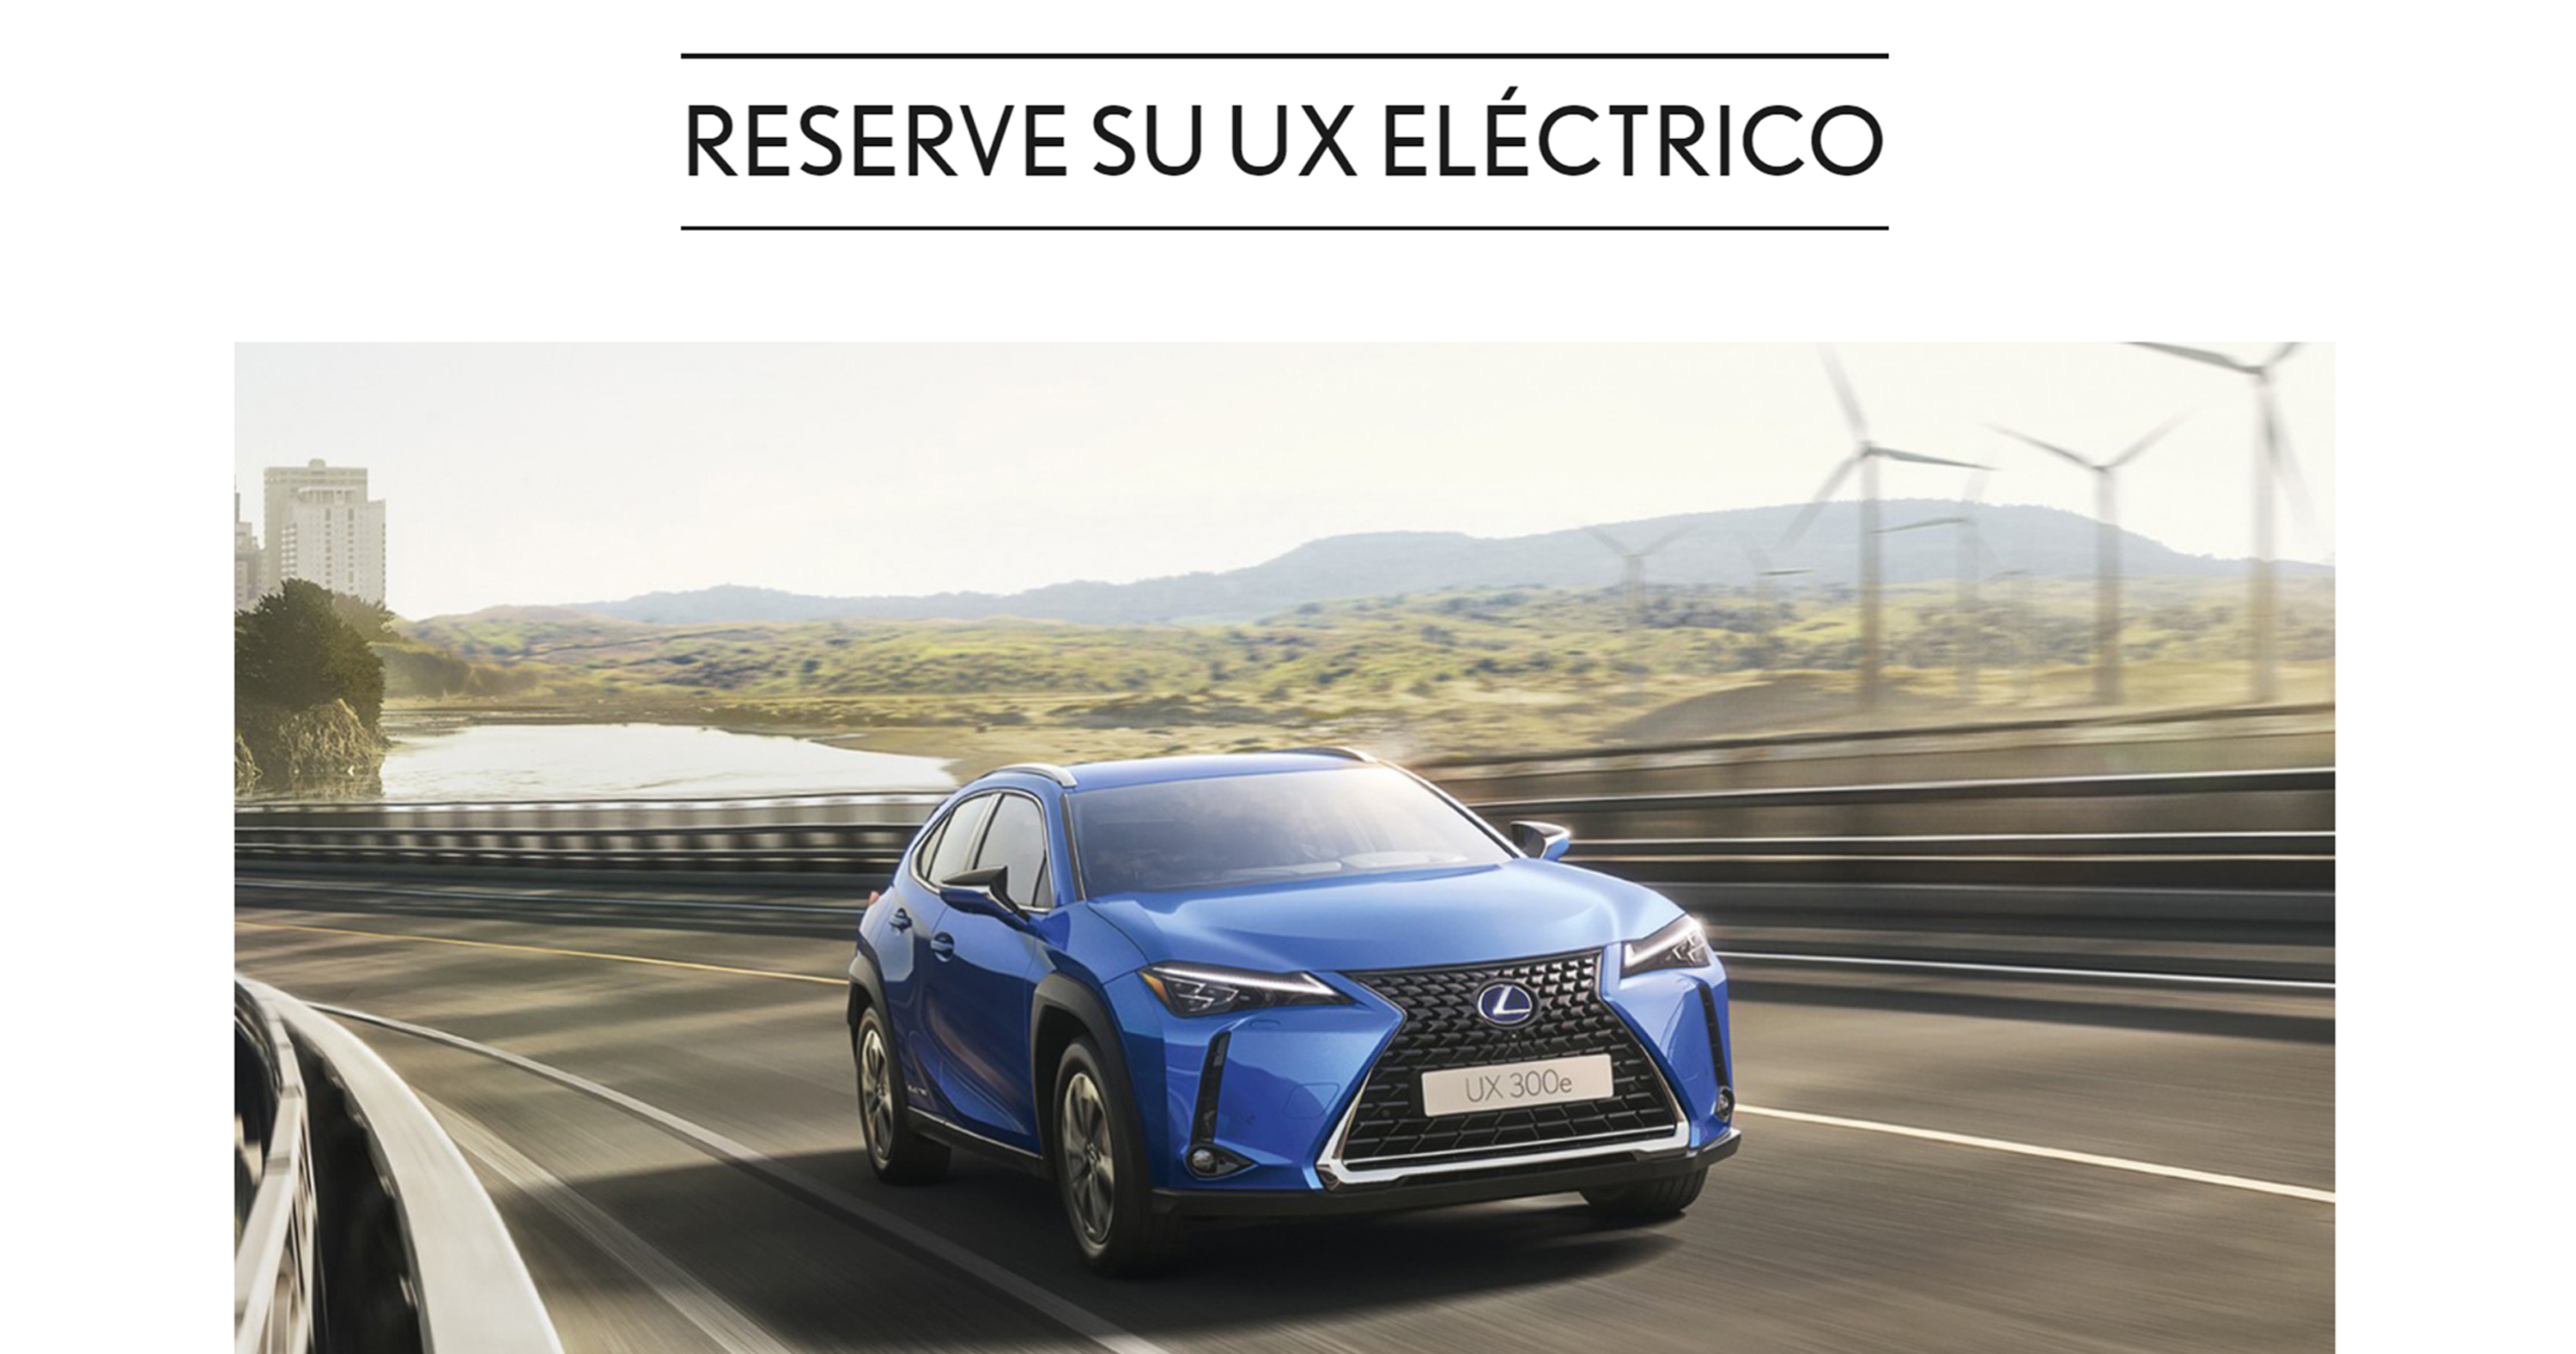 Lexus habilita un canal online para la reserva del nuevo UX 300e eléctrico